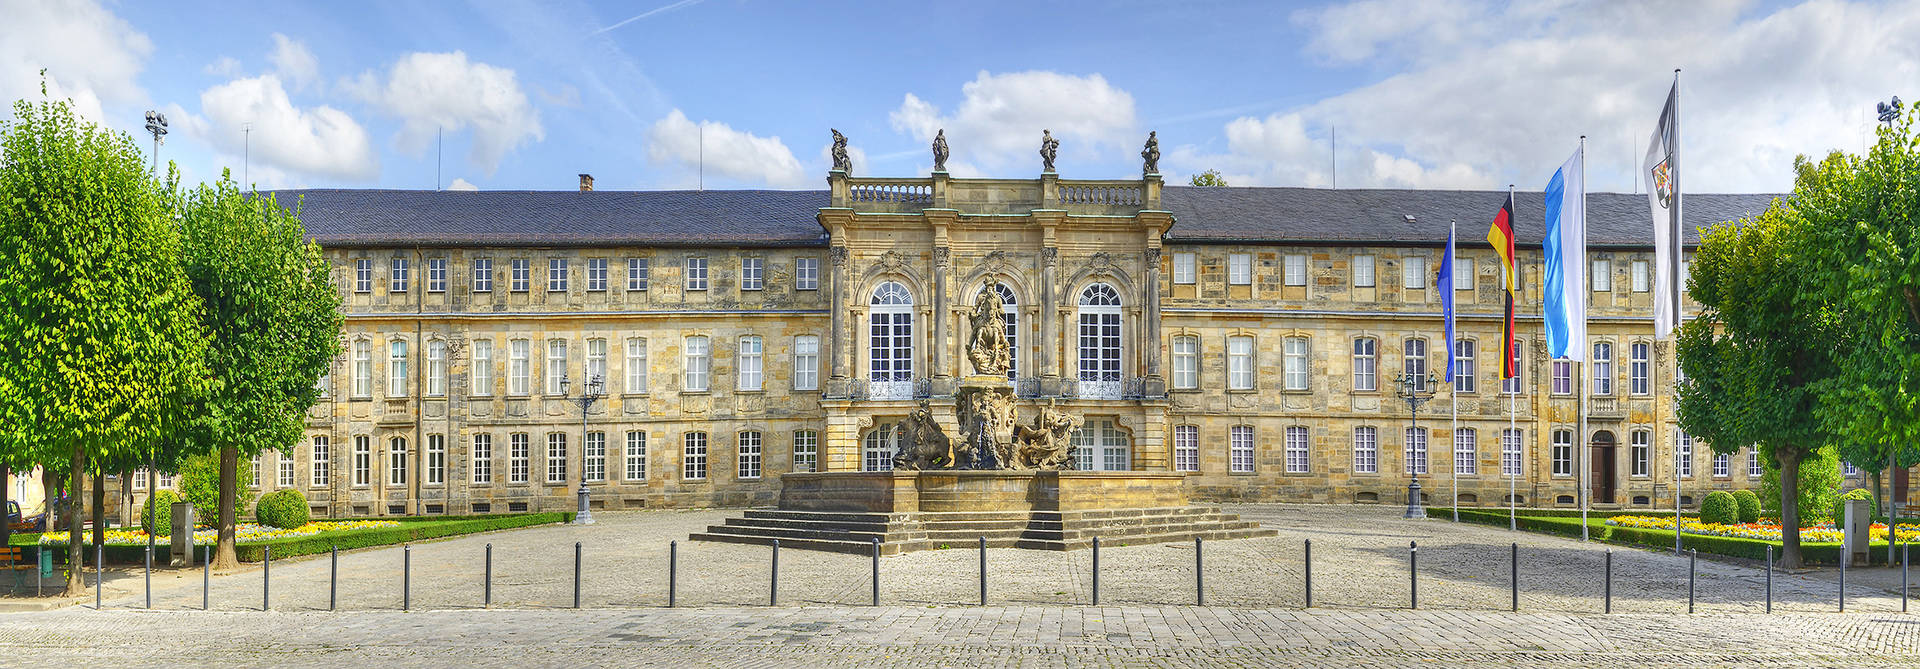 Palacio nuevo -  H4 Hotel Residenzschloss Bayreuth - Página oficial